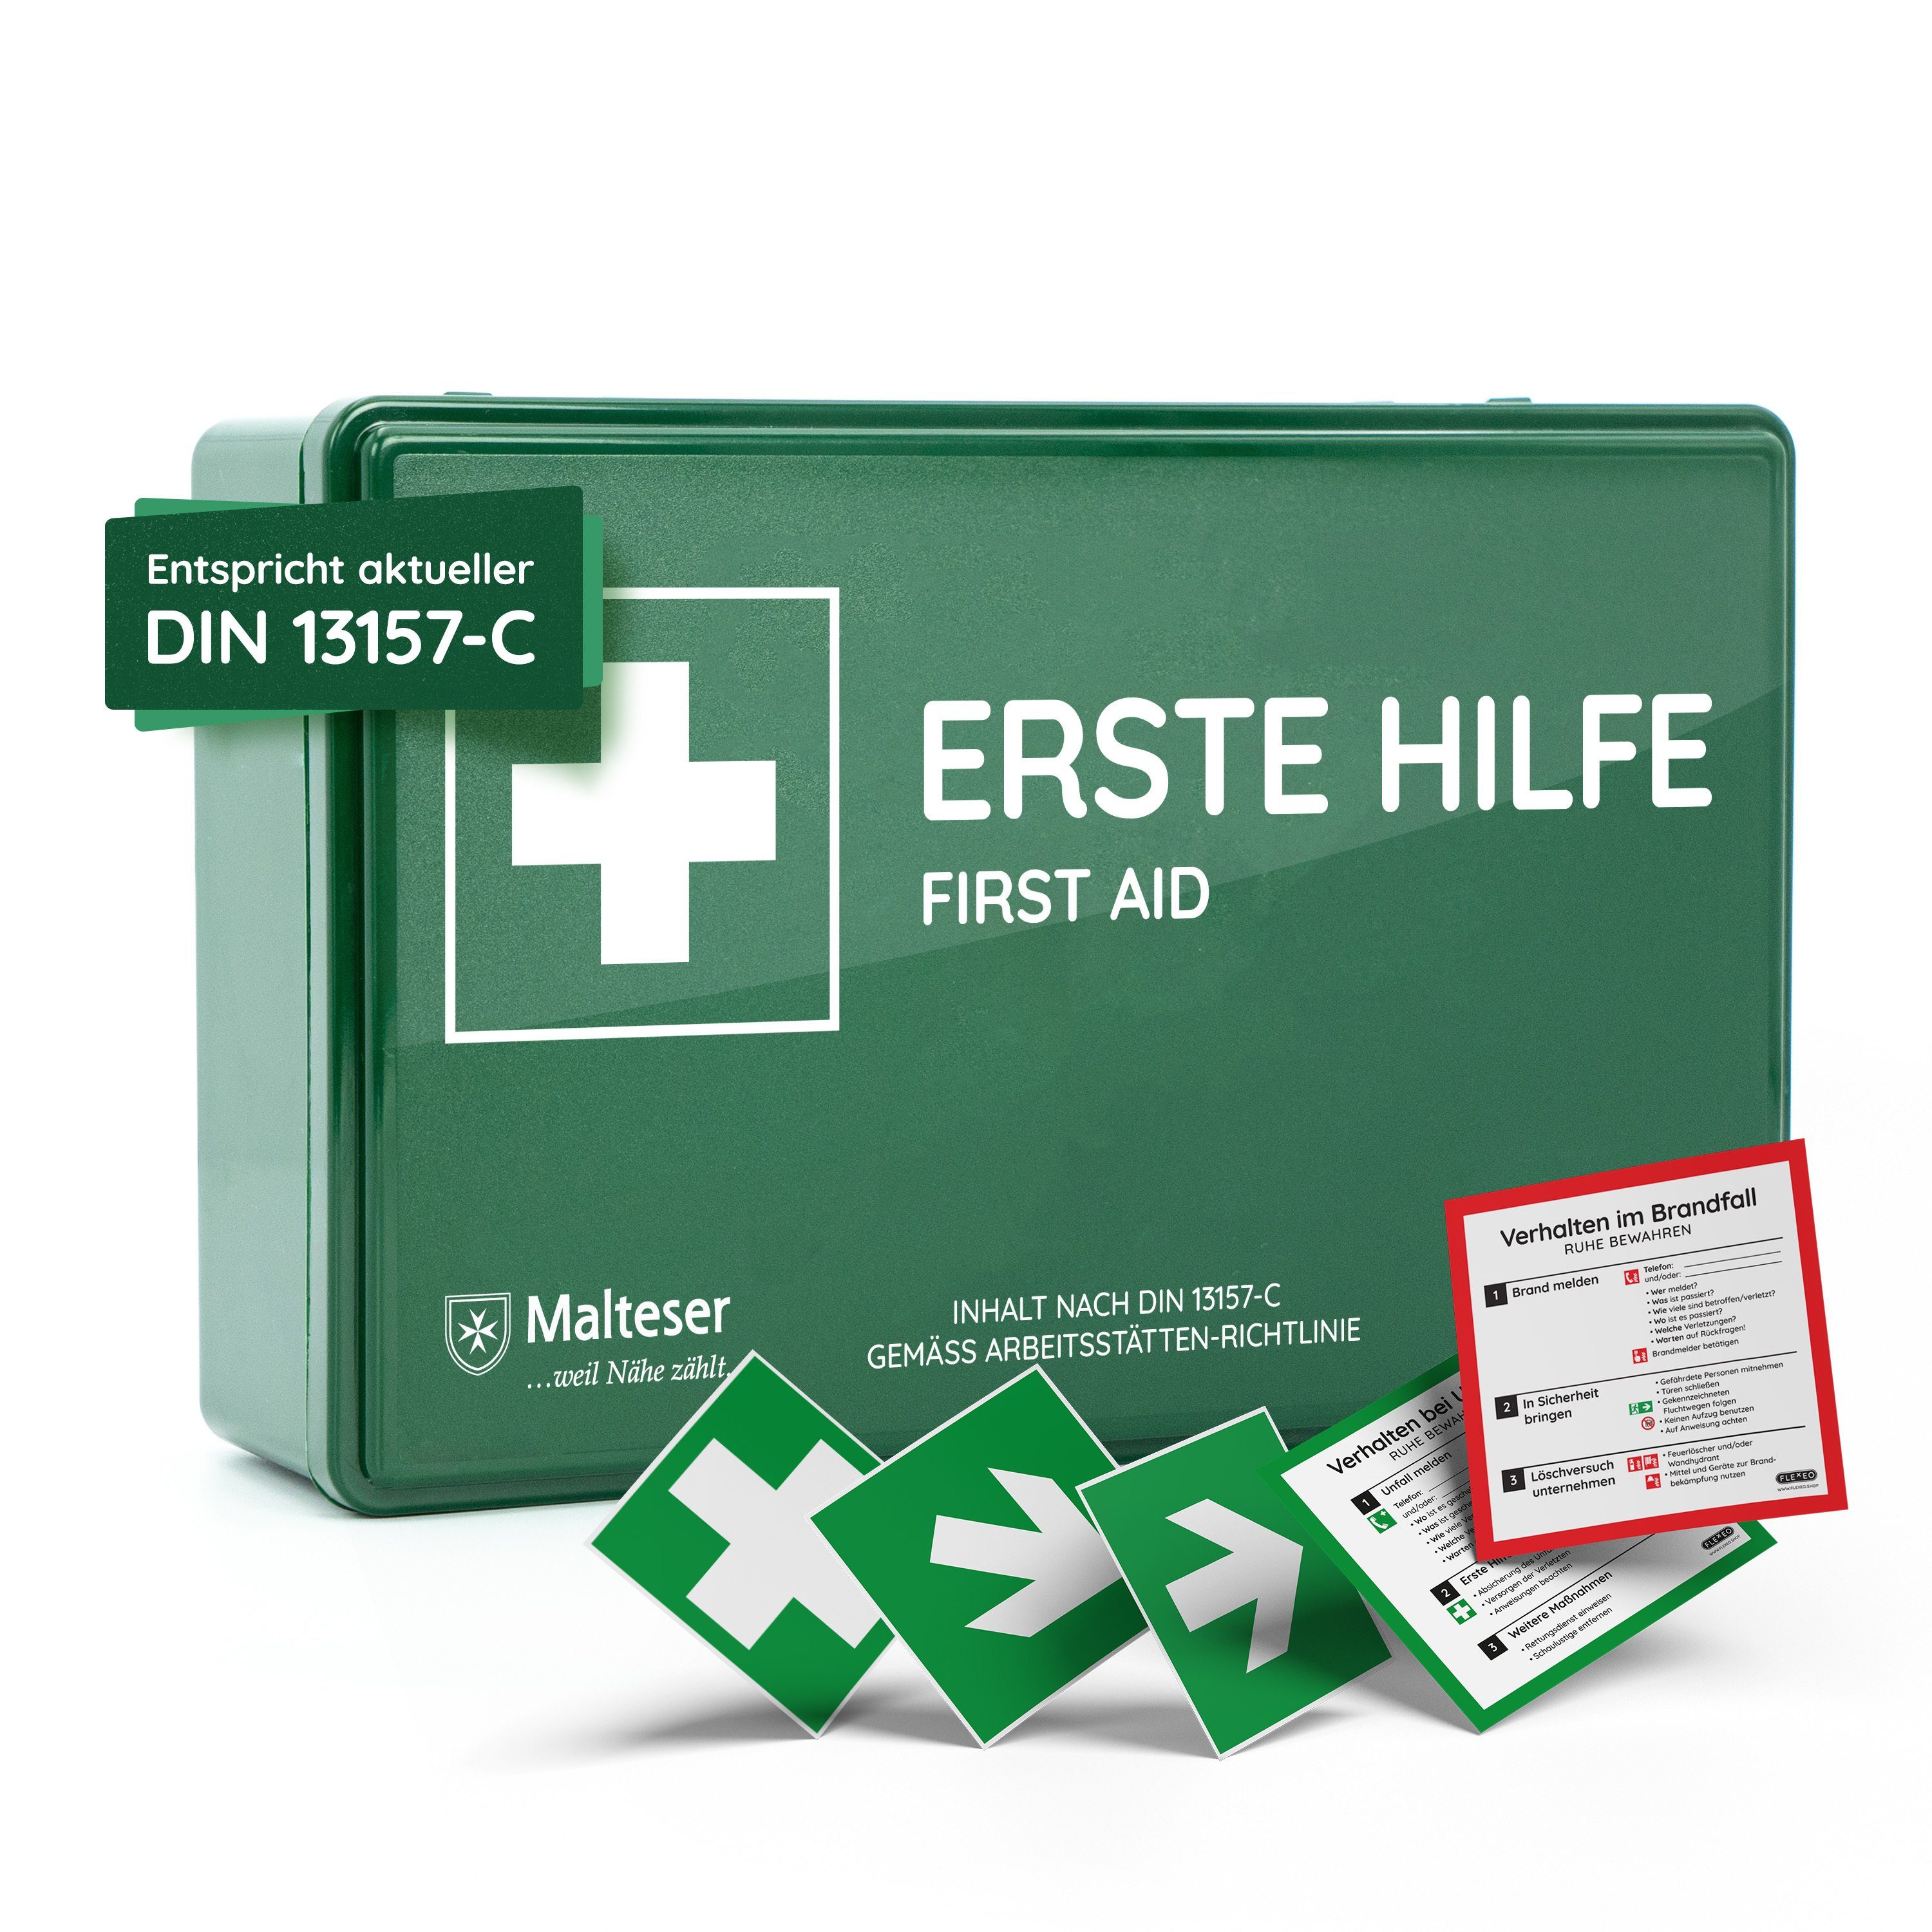 Erste-Hilfe- Medizinkoffer - Sport nach DIN 13164 + Sport-Ausstattung